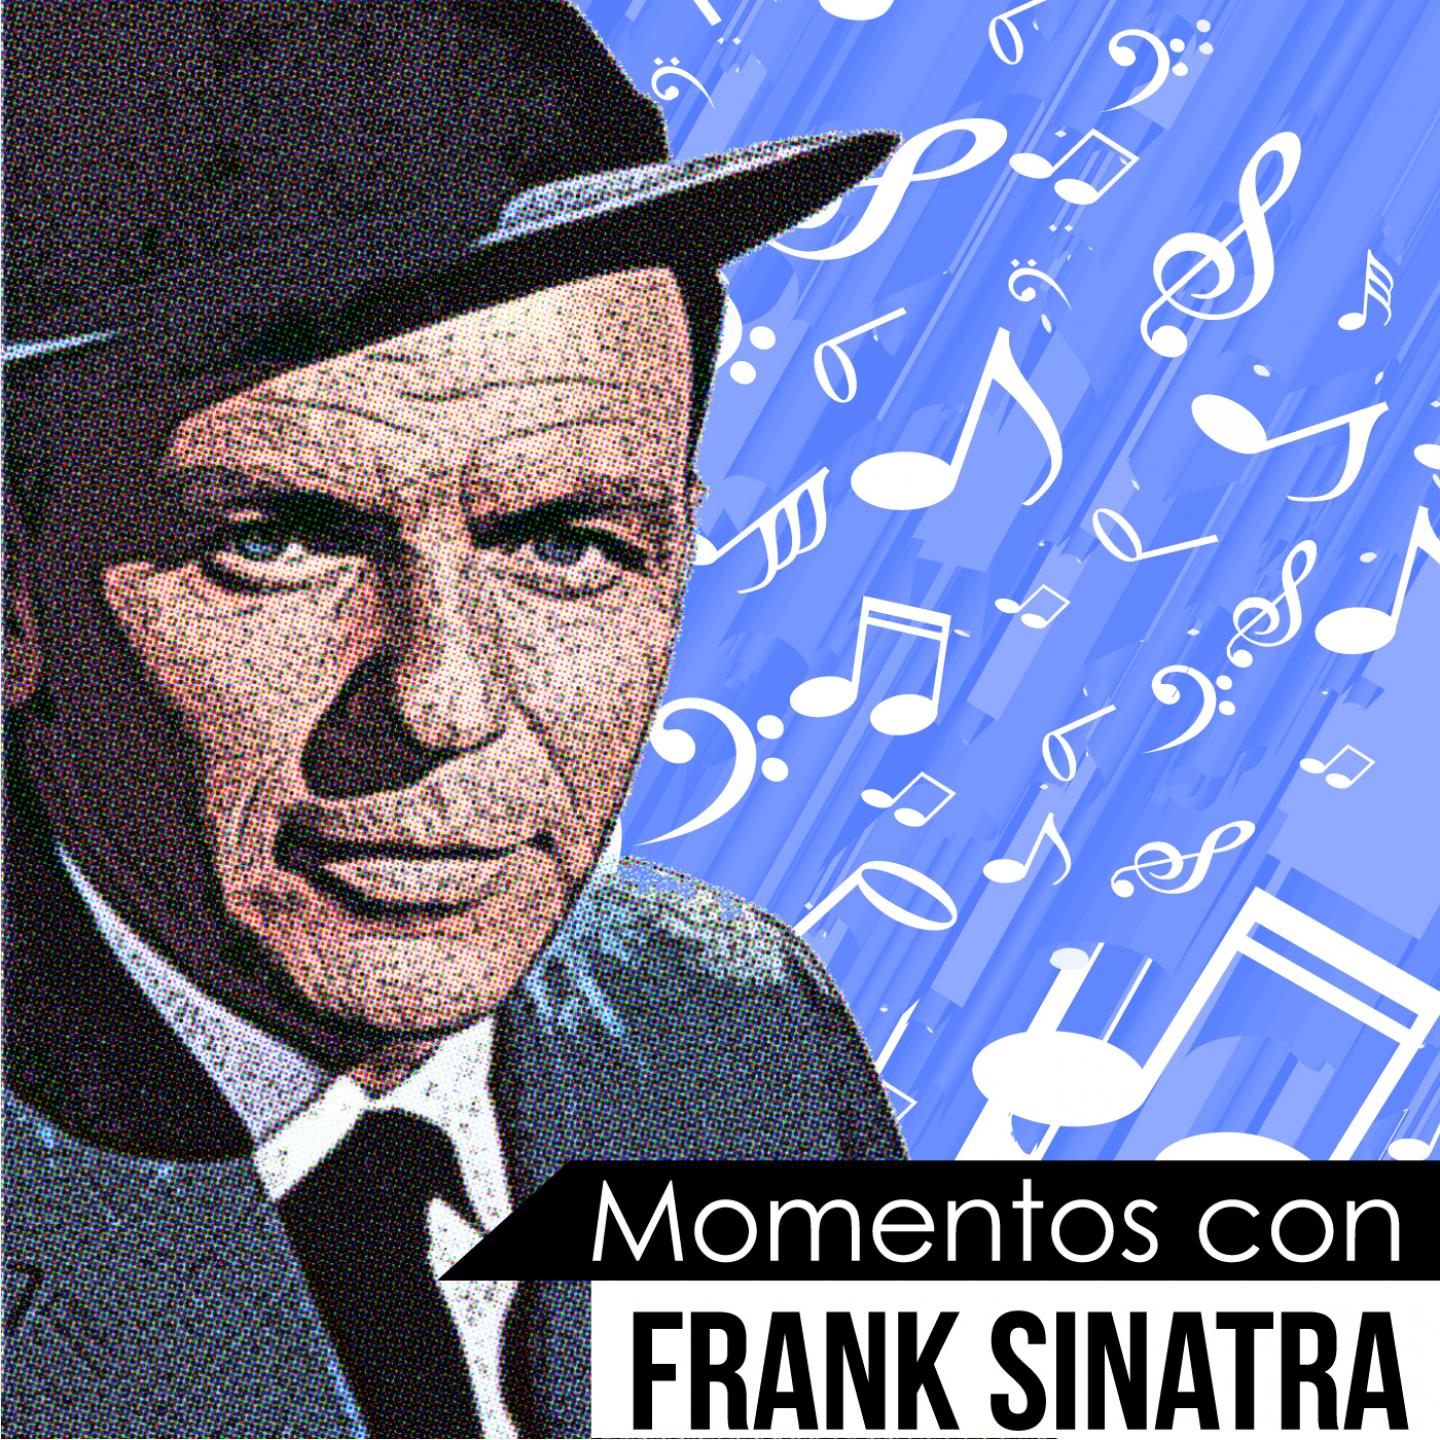 You're Driving Me Crazy! (Momentos Con Frank Sinatra)